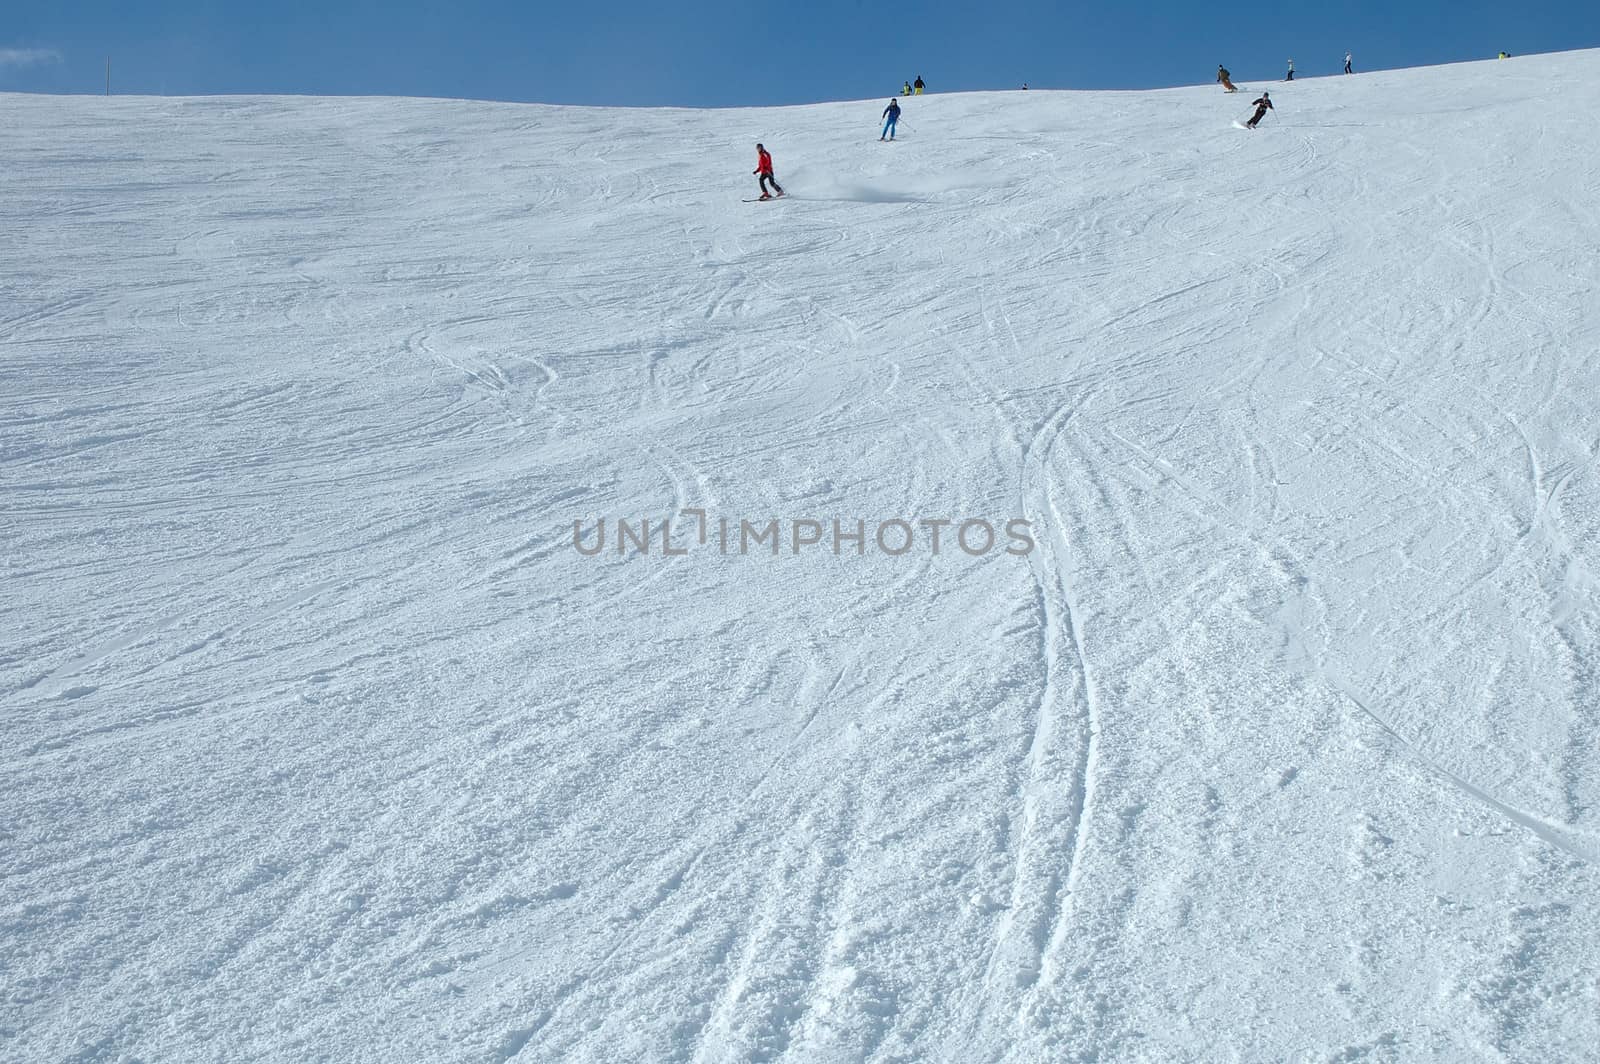 Ski slope by janhetman